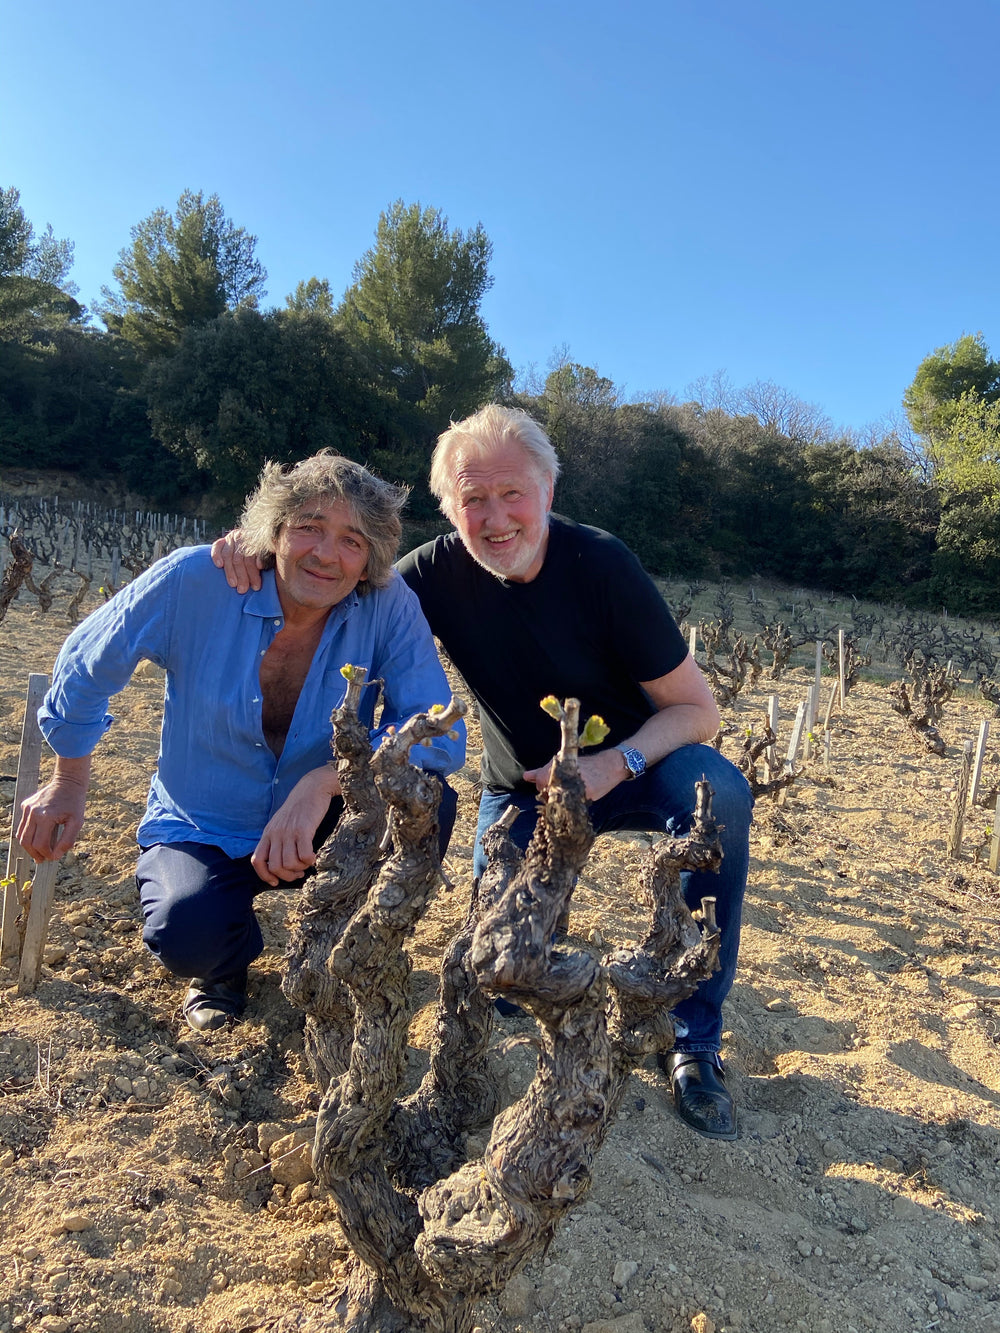 Gari - The wine of Pierre Gagnaire and Rudy Ricciotti